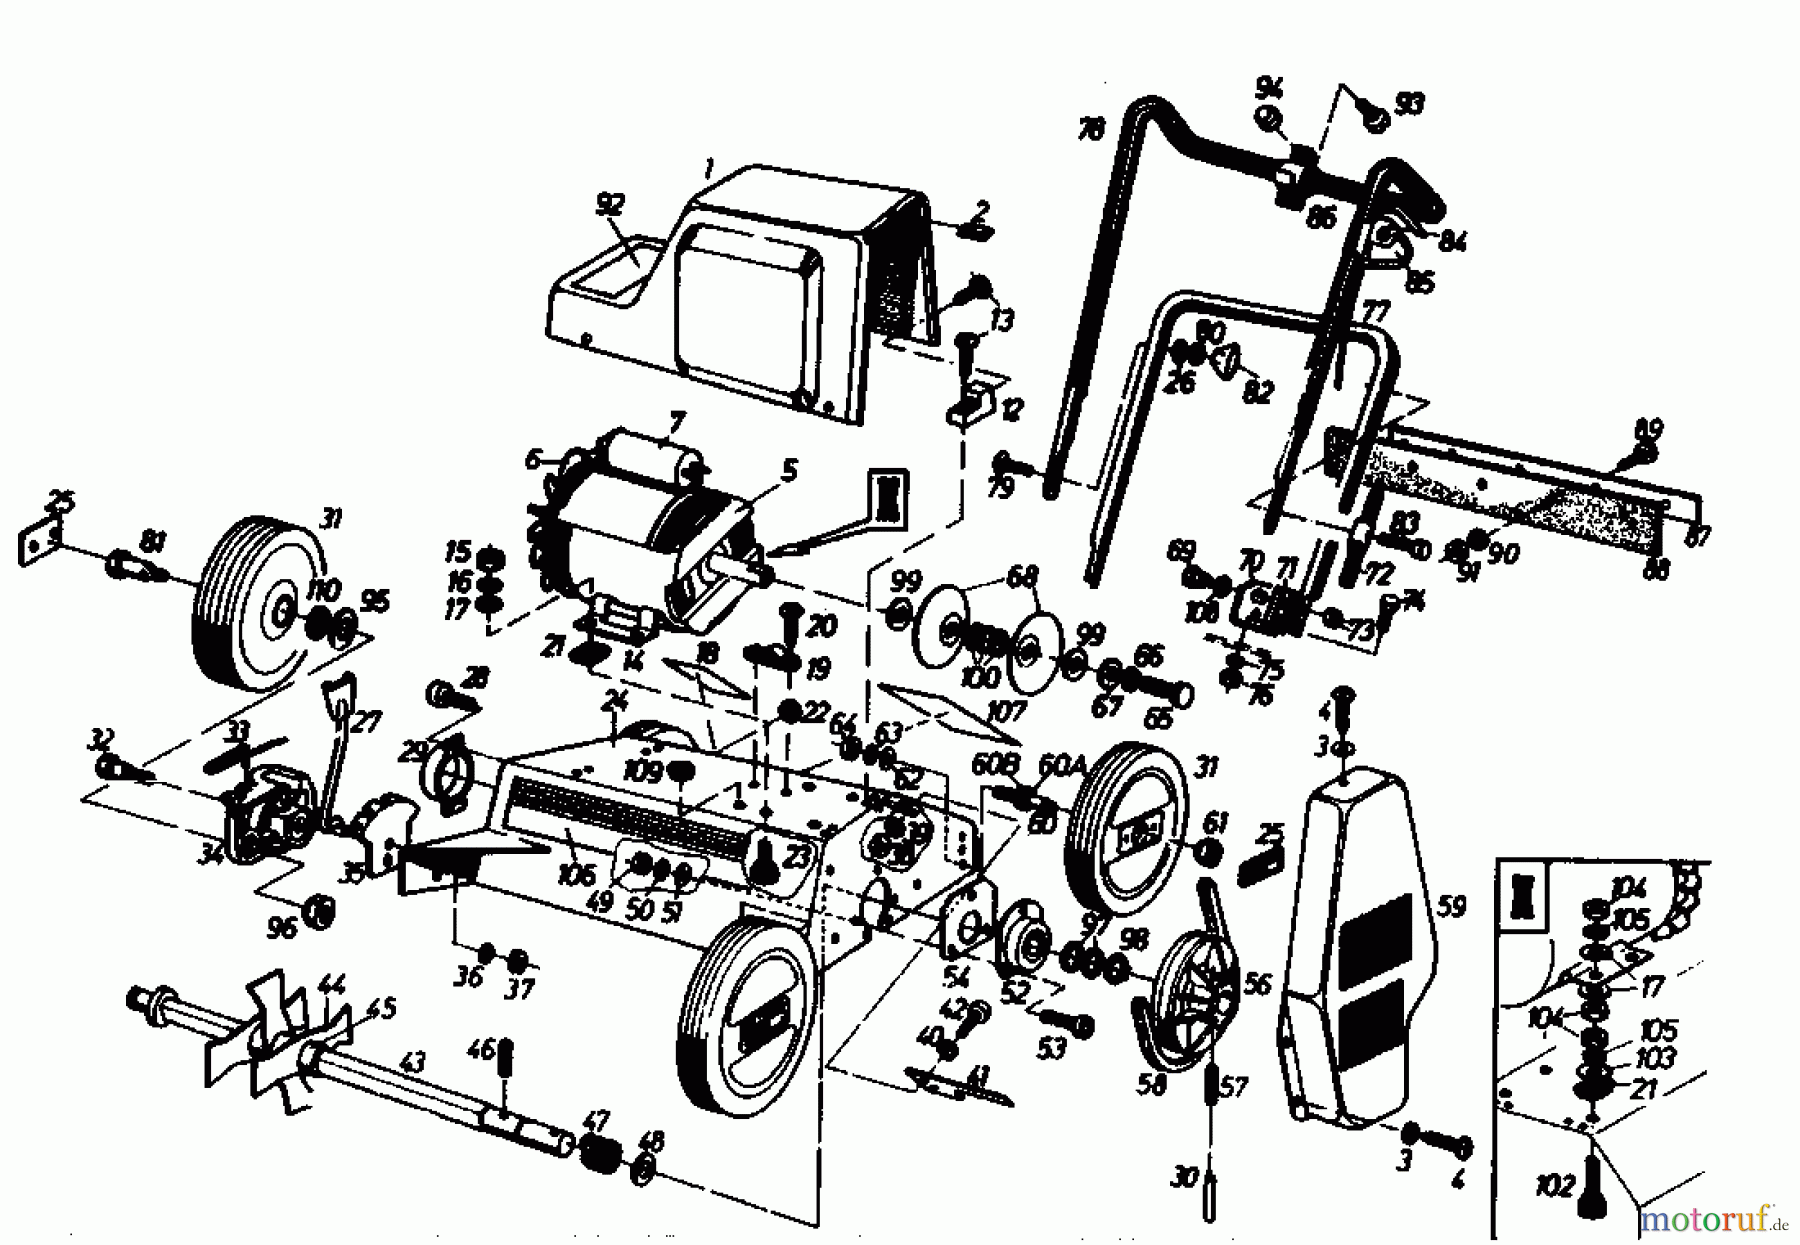  Gutbrod Petrol verticutter VS 40 A 00054.04  (1989) Basic machine